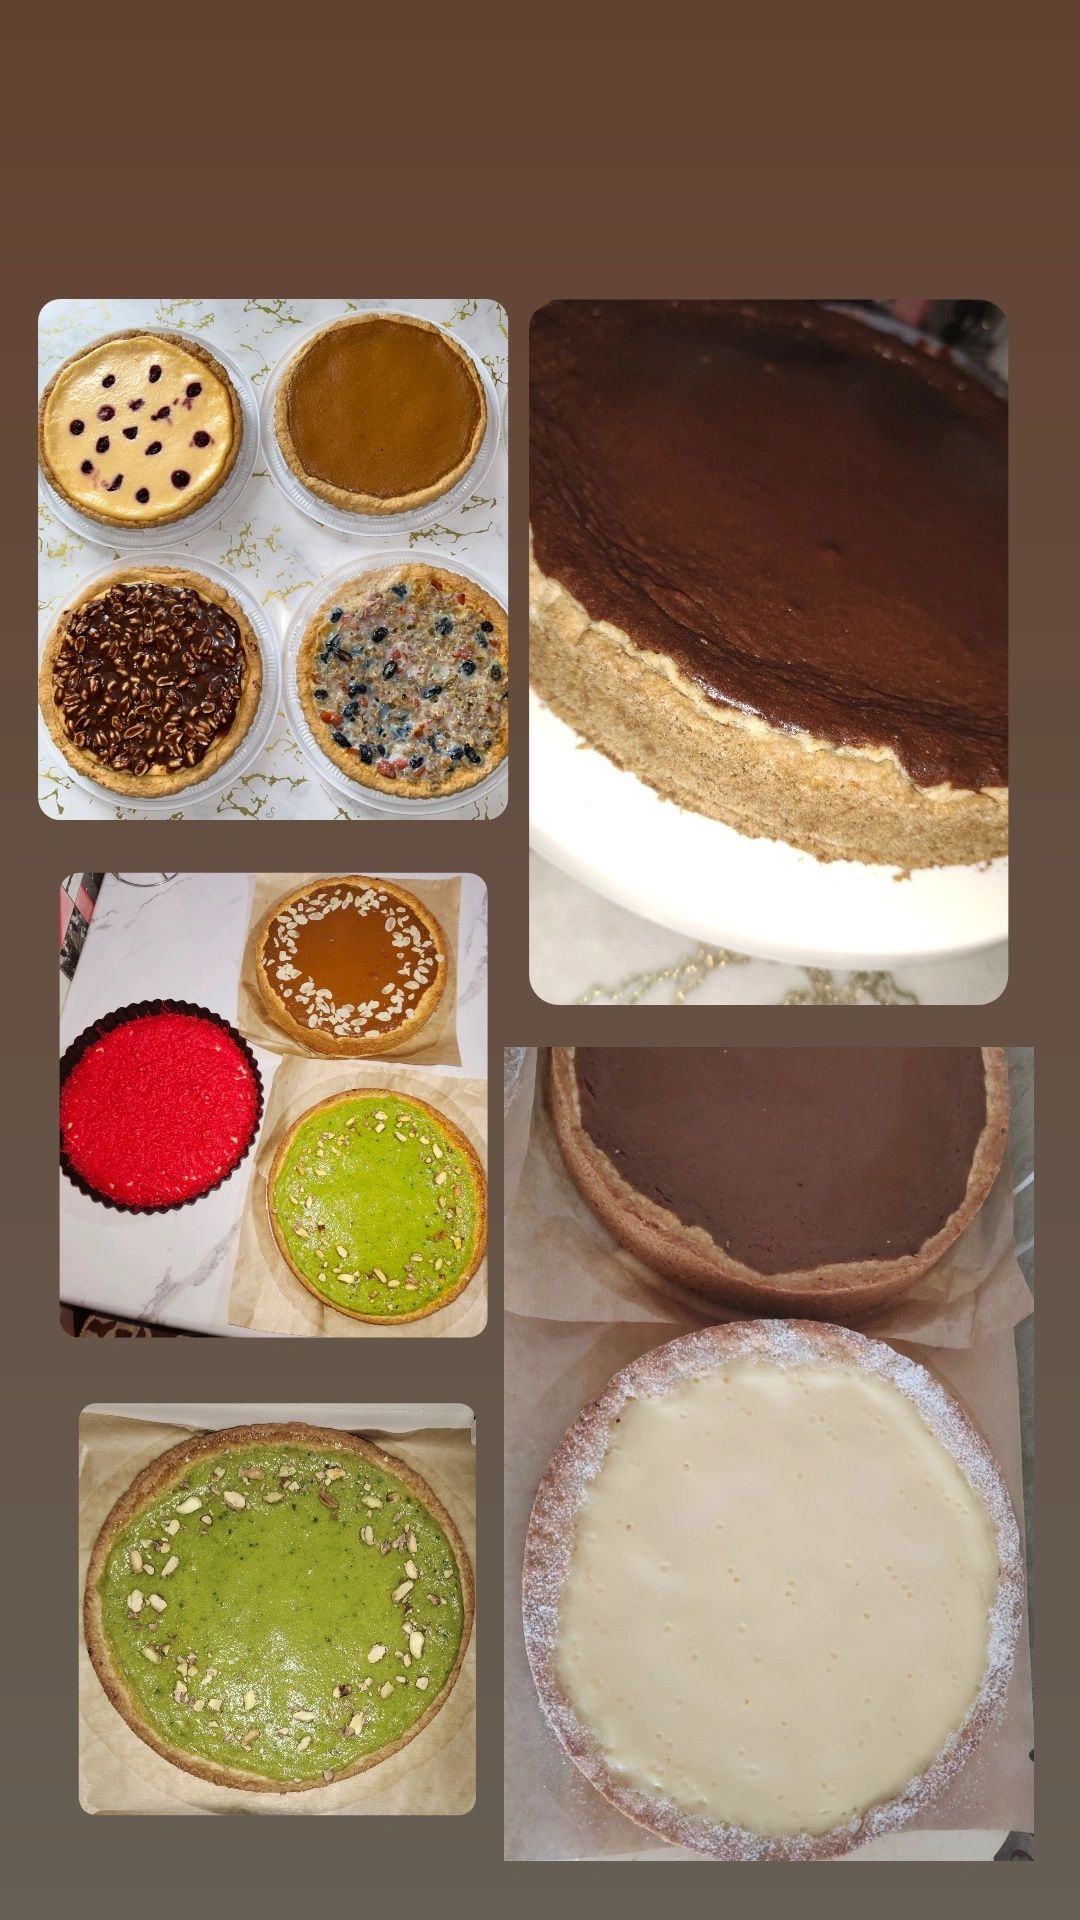 сладкие домашние пироги:, творожный, карамельный, восточный,Сникерс...